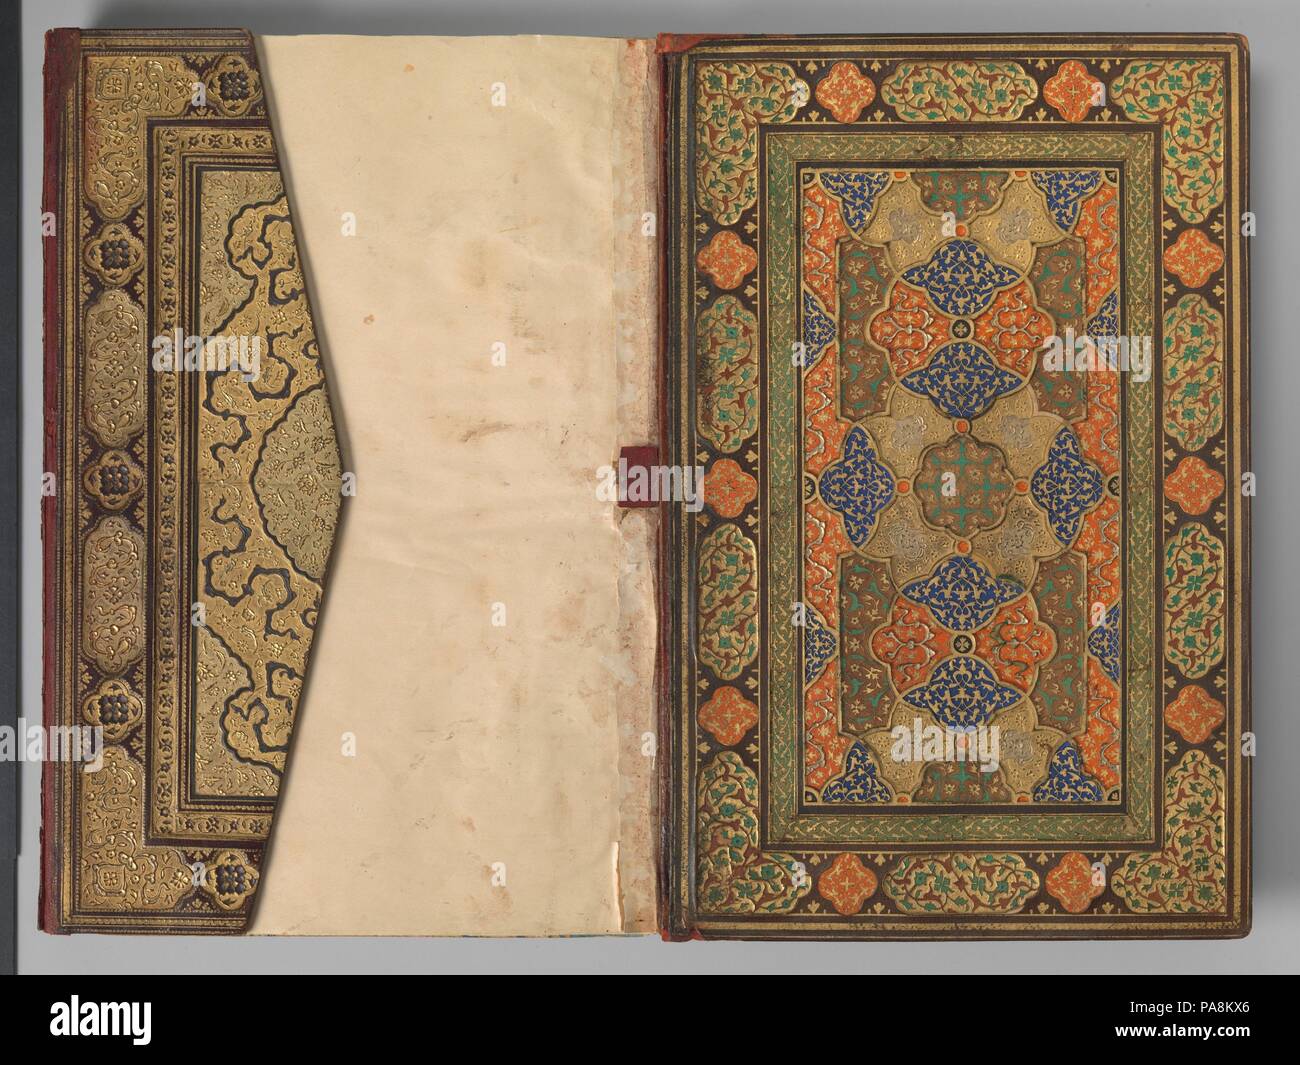 Mantiq al-tair (lingua degli uccelli). Autore: Farid al-Din 'Attar (ca. 1142-1220). Calligrapher: Sultan 'Ali Mashhadi (ca.1440-1520). Dimensioni: H. 12 7/8 in. (32,7 cm) W. 8 5/16 in. (21,1 cm). Data: ca. 1600. Questo elegantemente illuminato a doppia pagina frontespizio contiene i primi venti linee di preghiere. Le aree di testo sono racchiusi da quattro grandi pannelli che contengono il titolo del libro, Mantiq al-Tayr, e il nome dell'autore, Farid al-Din 'Attar, nel cartiglio centrale. Un minuto iscrizione presso il bordo di questi pannelli dice che è stata fatta da un famoso illuminatore e pittore, Zayn al-'Abi Foto Stock